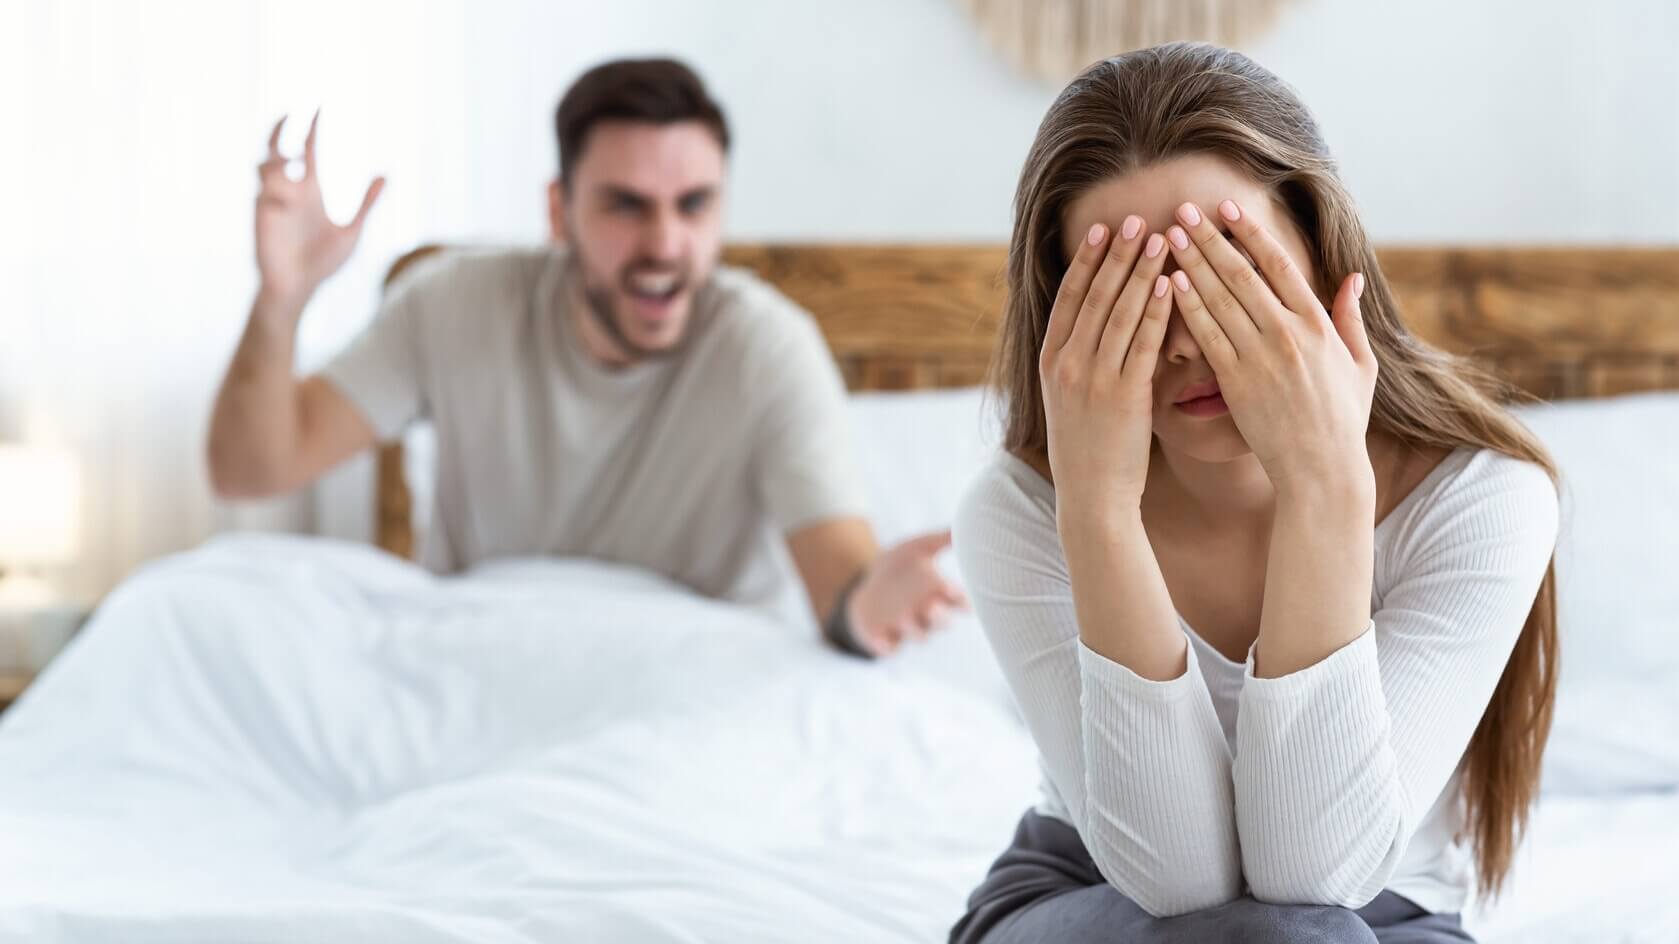 Три главные причины ссор в паре